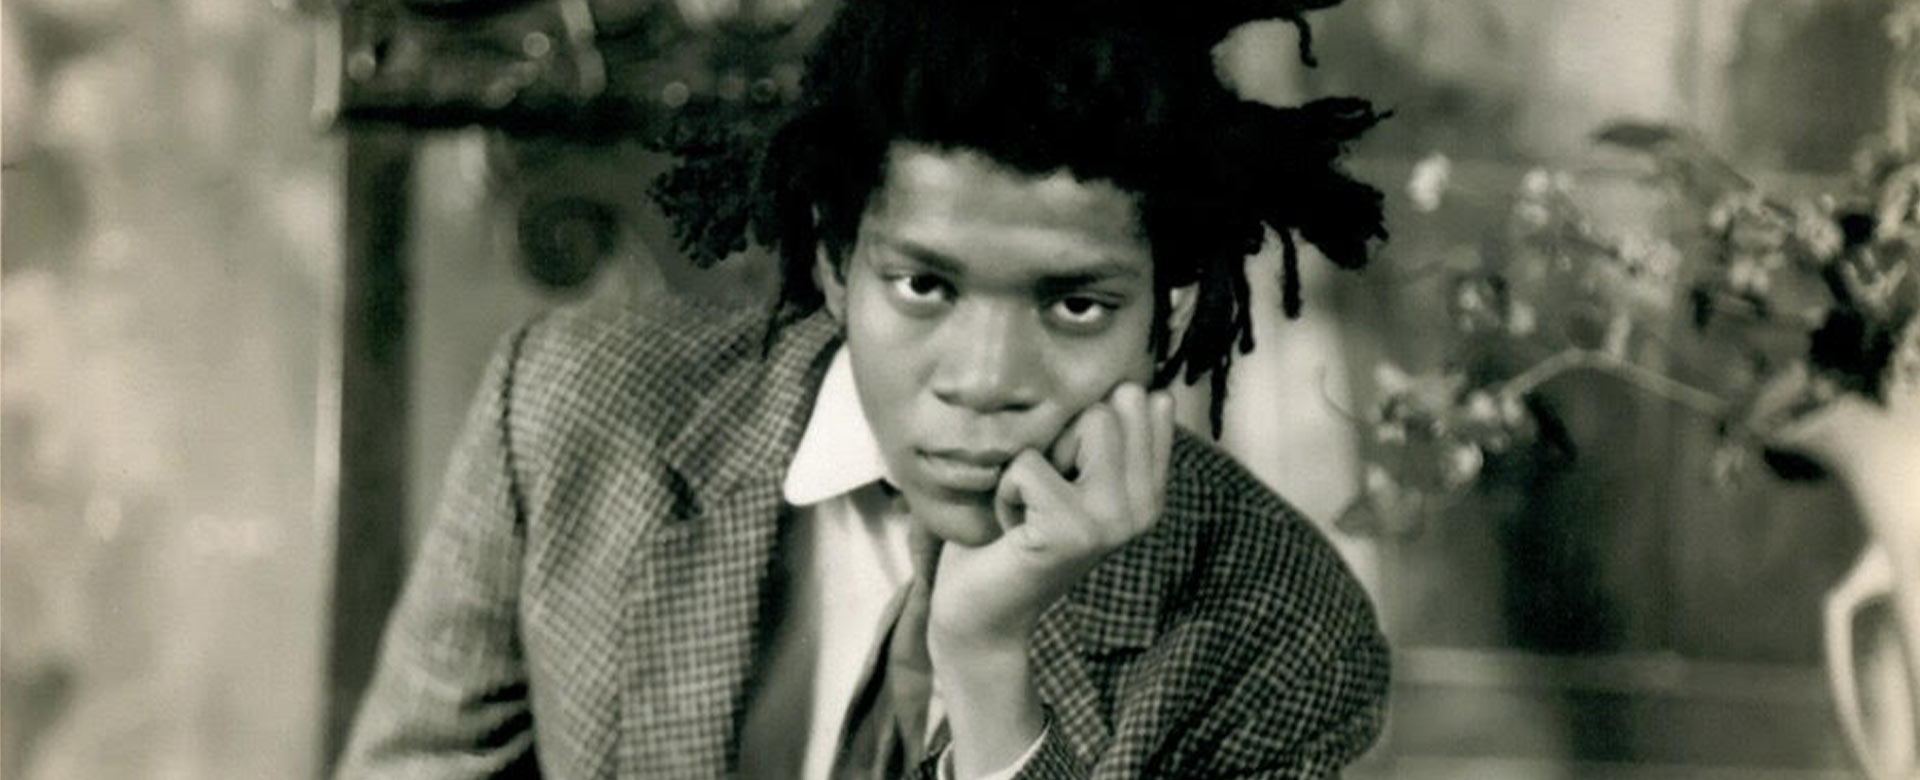 Jean-Michel Basquiat, 1982 © James Van der Zee Archive